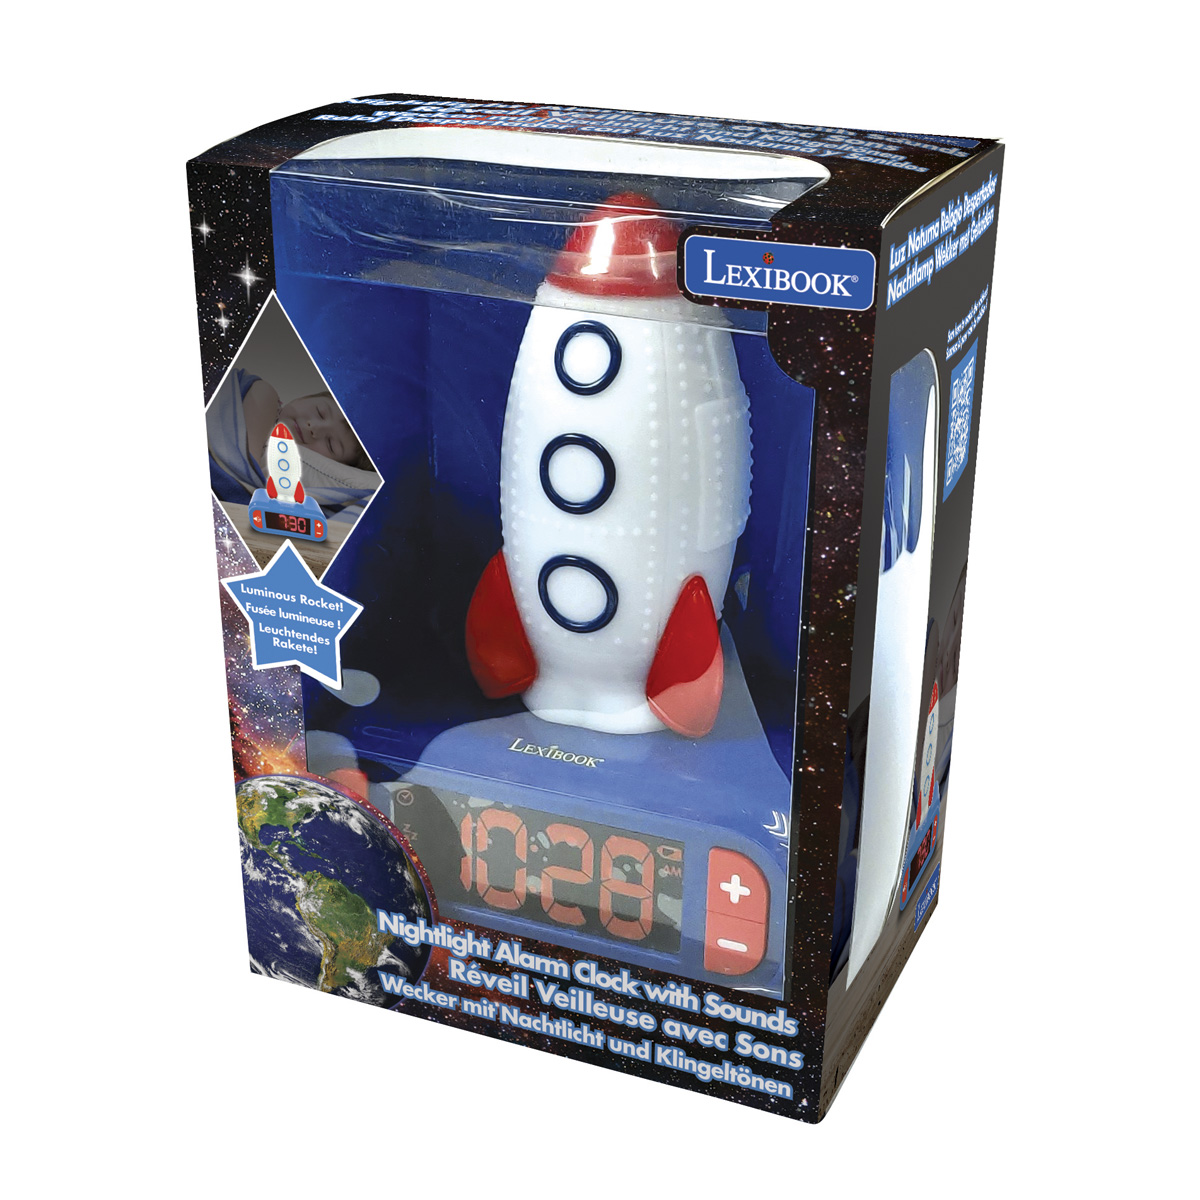 3D LEXIBOOK mit Rakete Wecker Nachtlicht